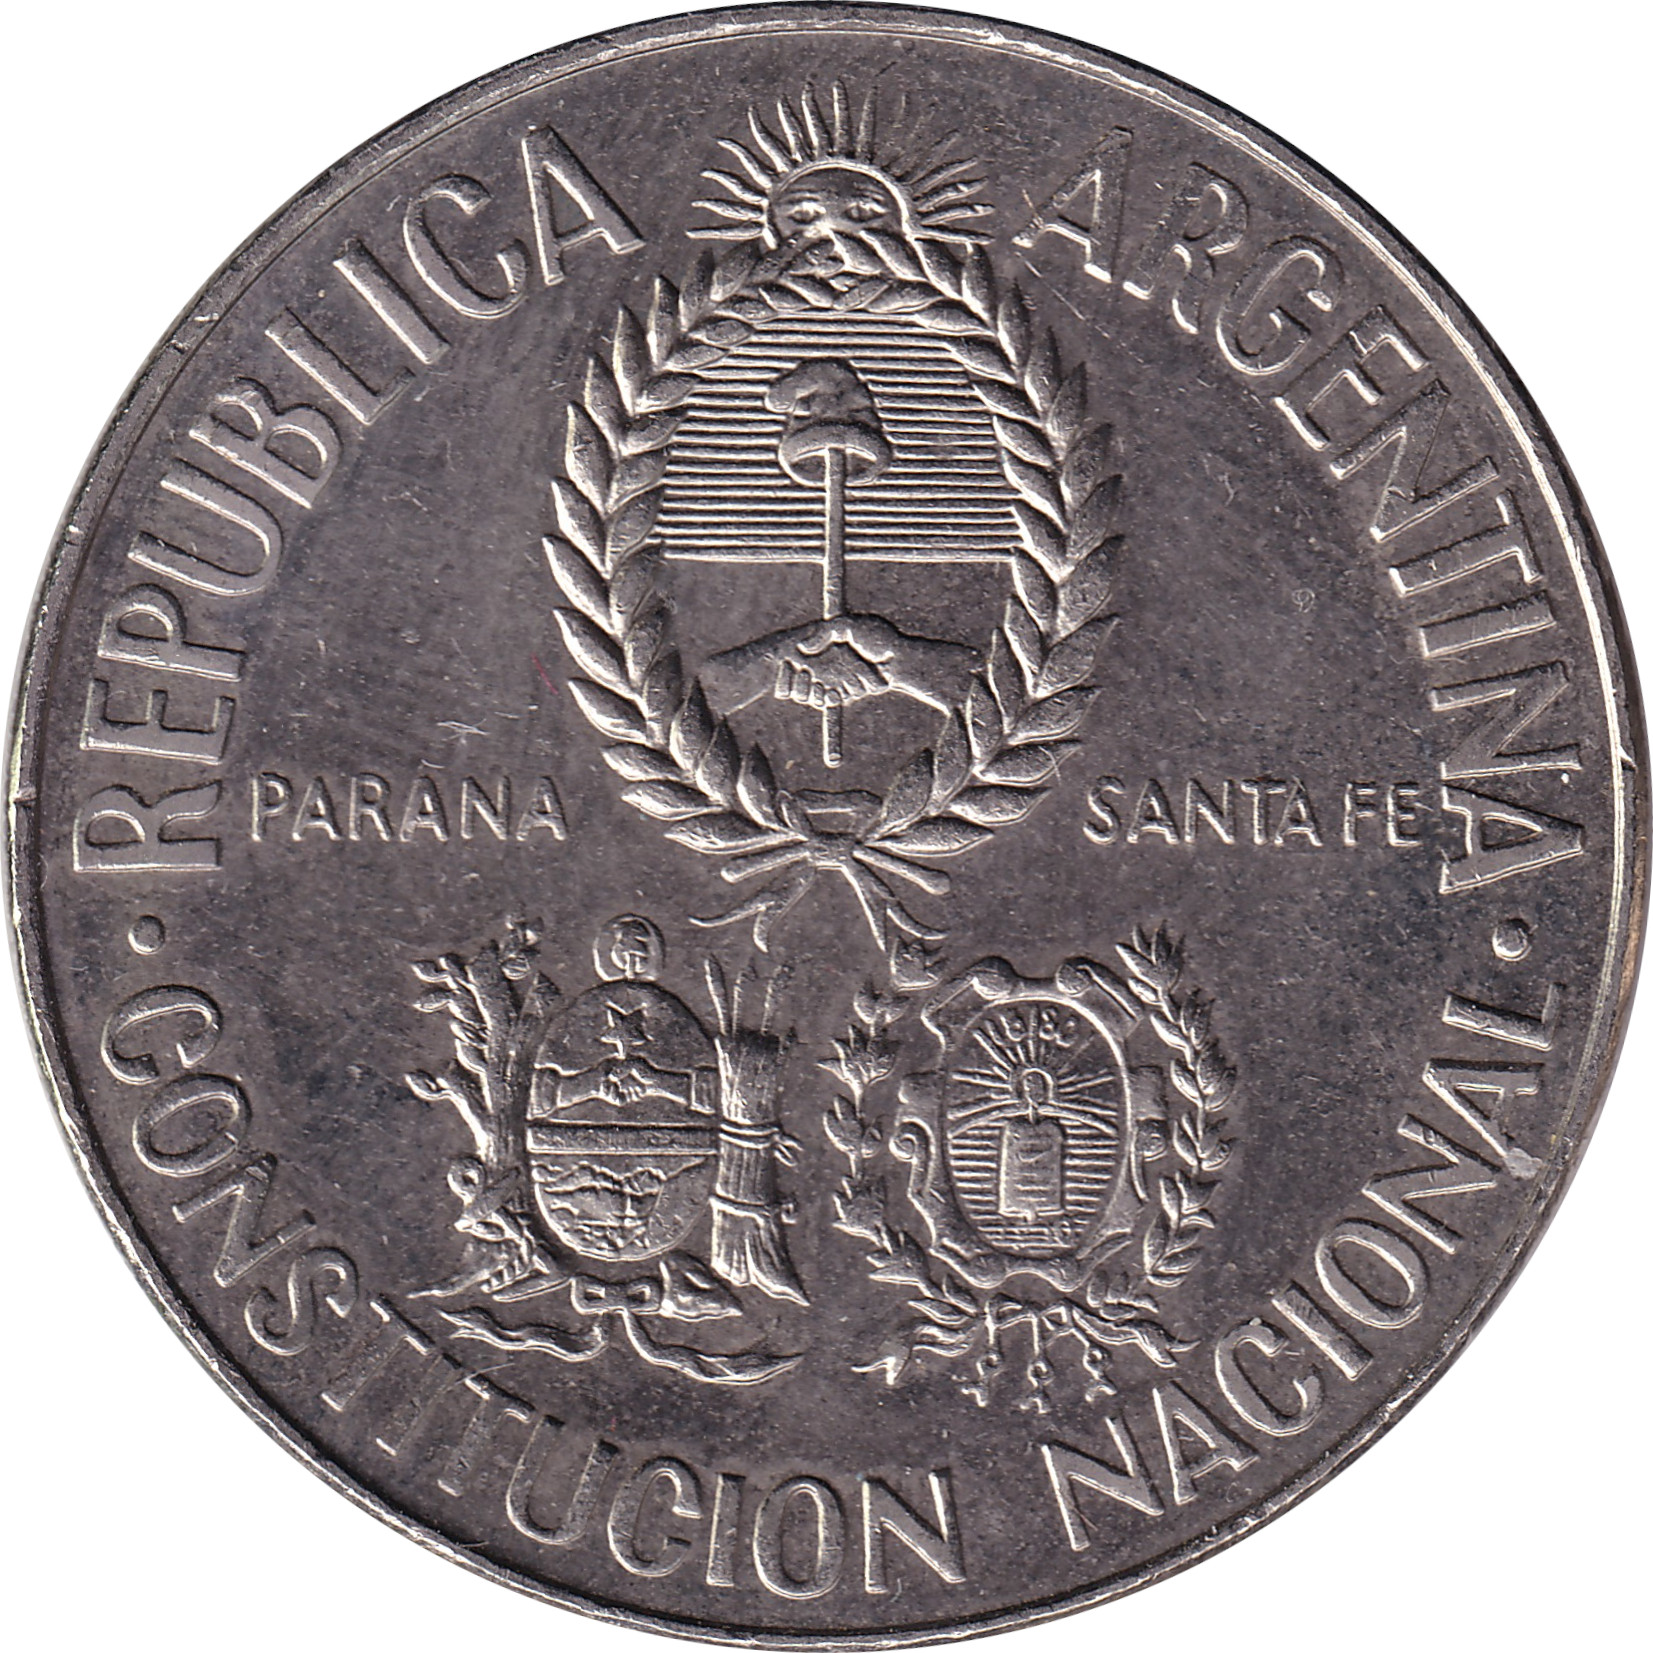 5 pesos - Constitution - Nickel